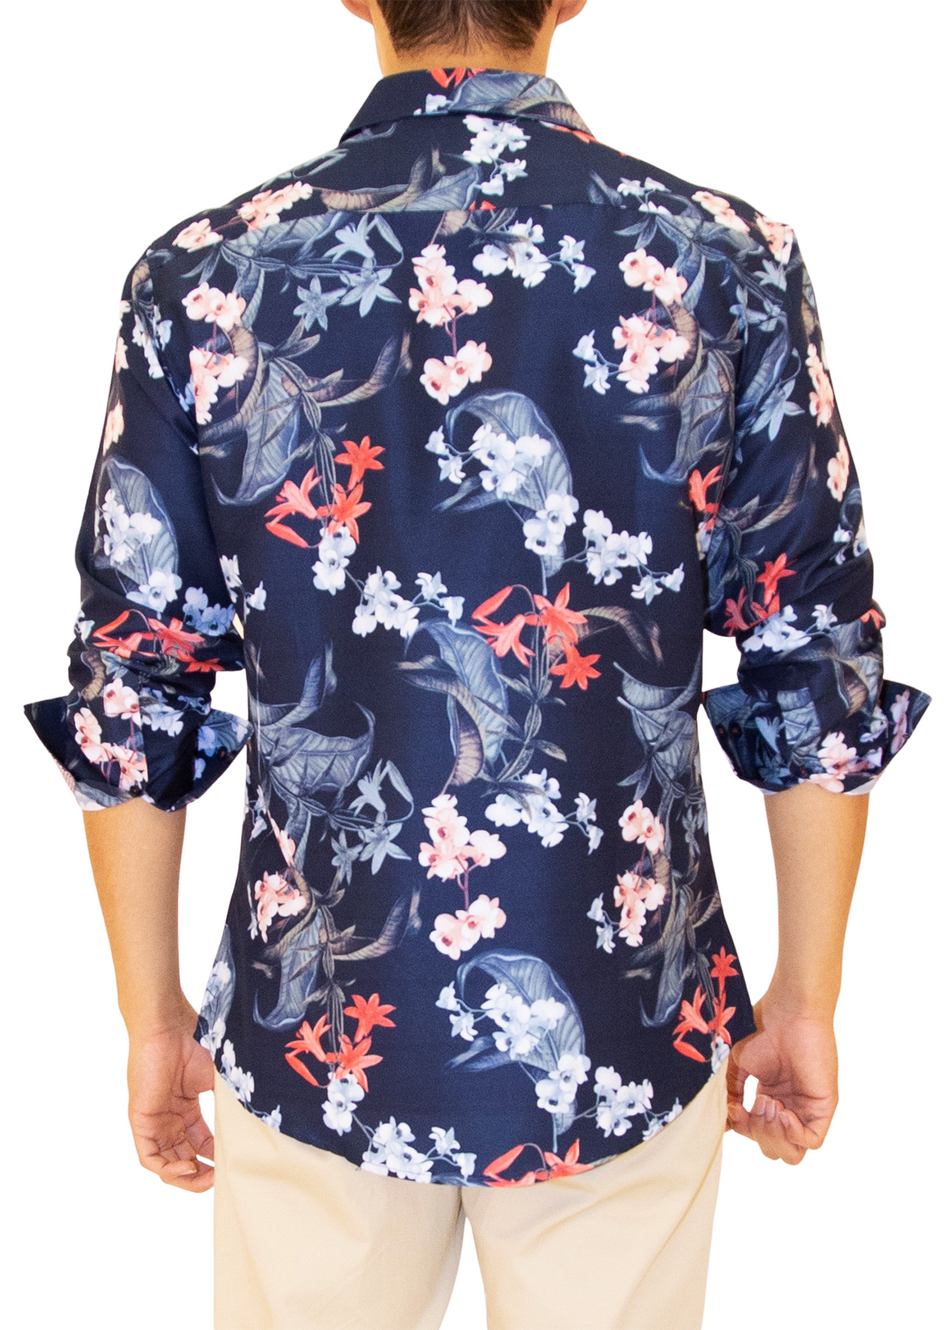 Men's Navy Floral Button Up Long Sleeve Dress Shirt